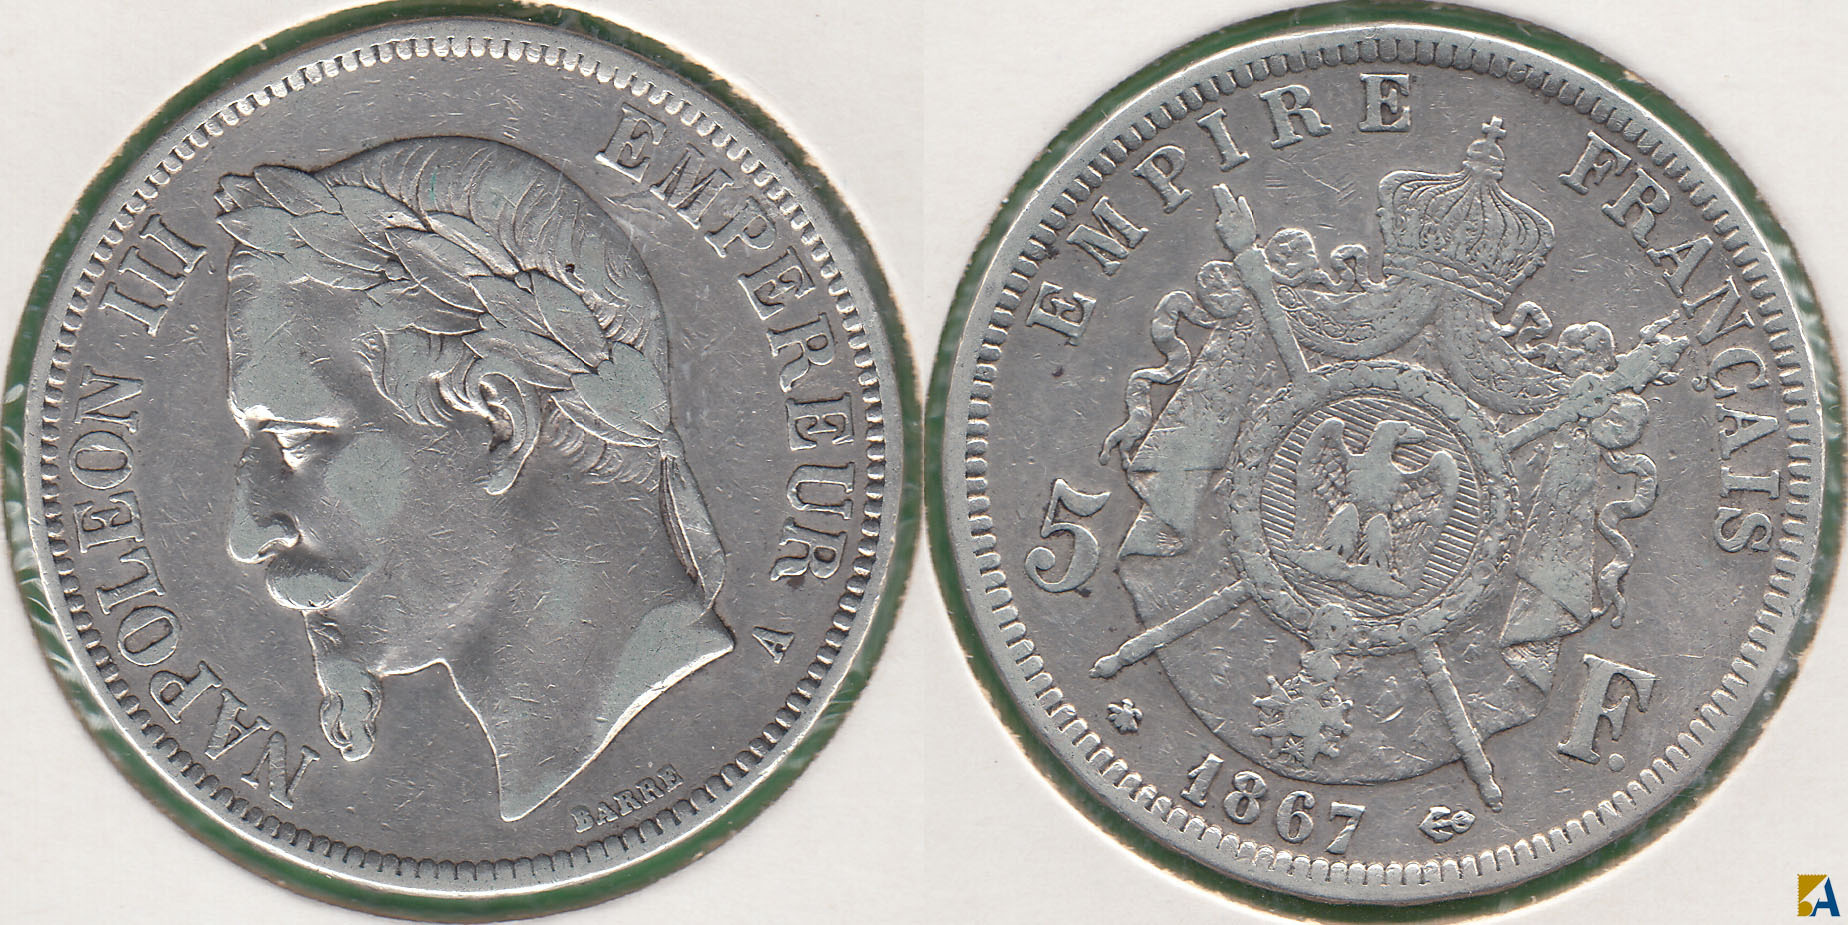 FRANCIA - FRANCE. 5 FRANCOS (FRANCS) DE 1867 A. PLATA 0.900.